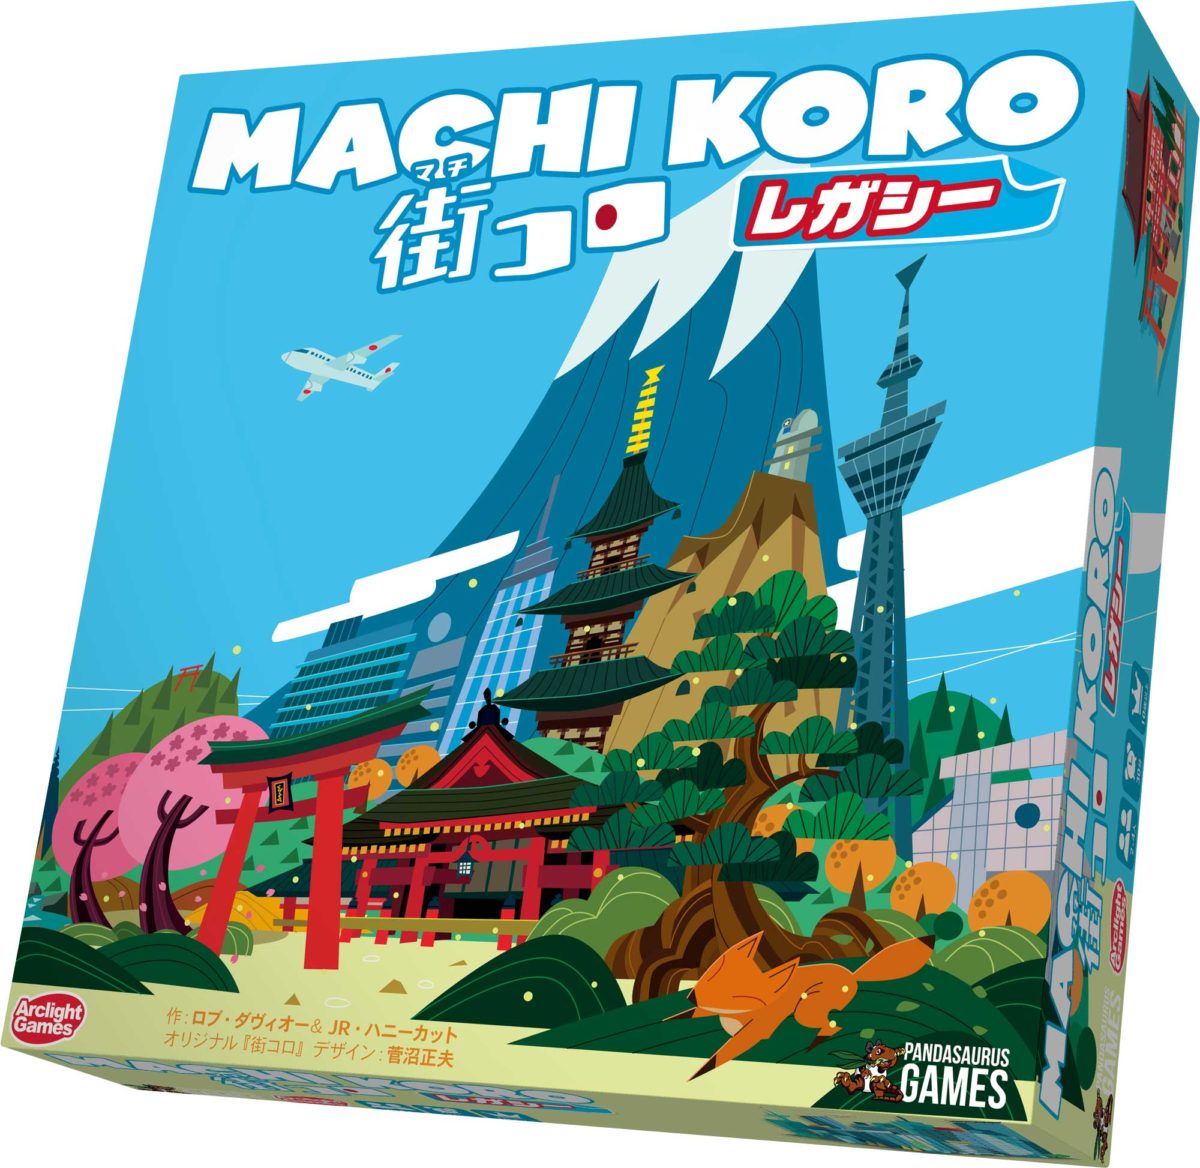 サイコロを振って自分の街を作り上げるゲーム 街コロレガシー 完全日本語版 発売 Broad ボードゲームマガジン